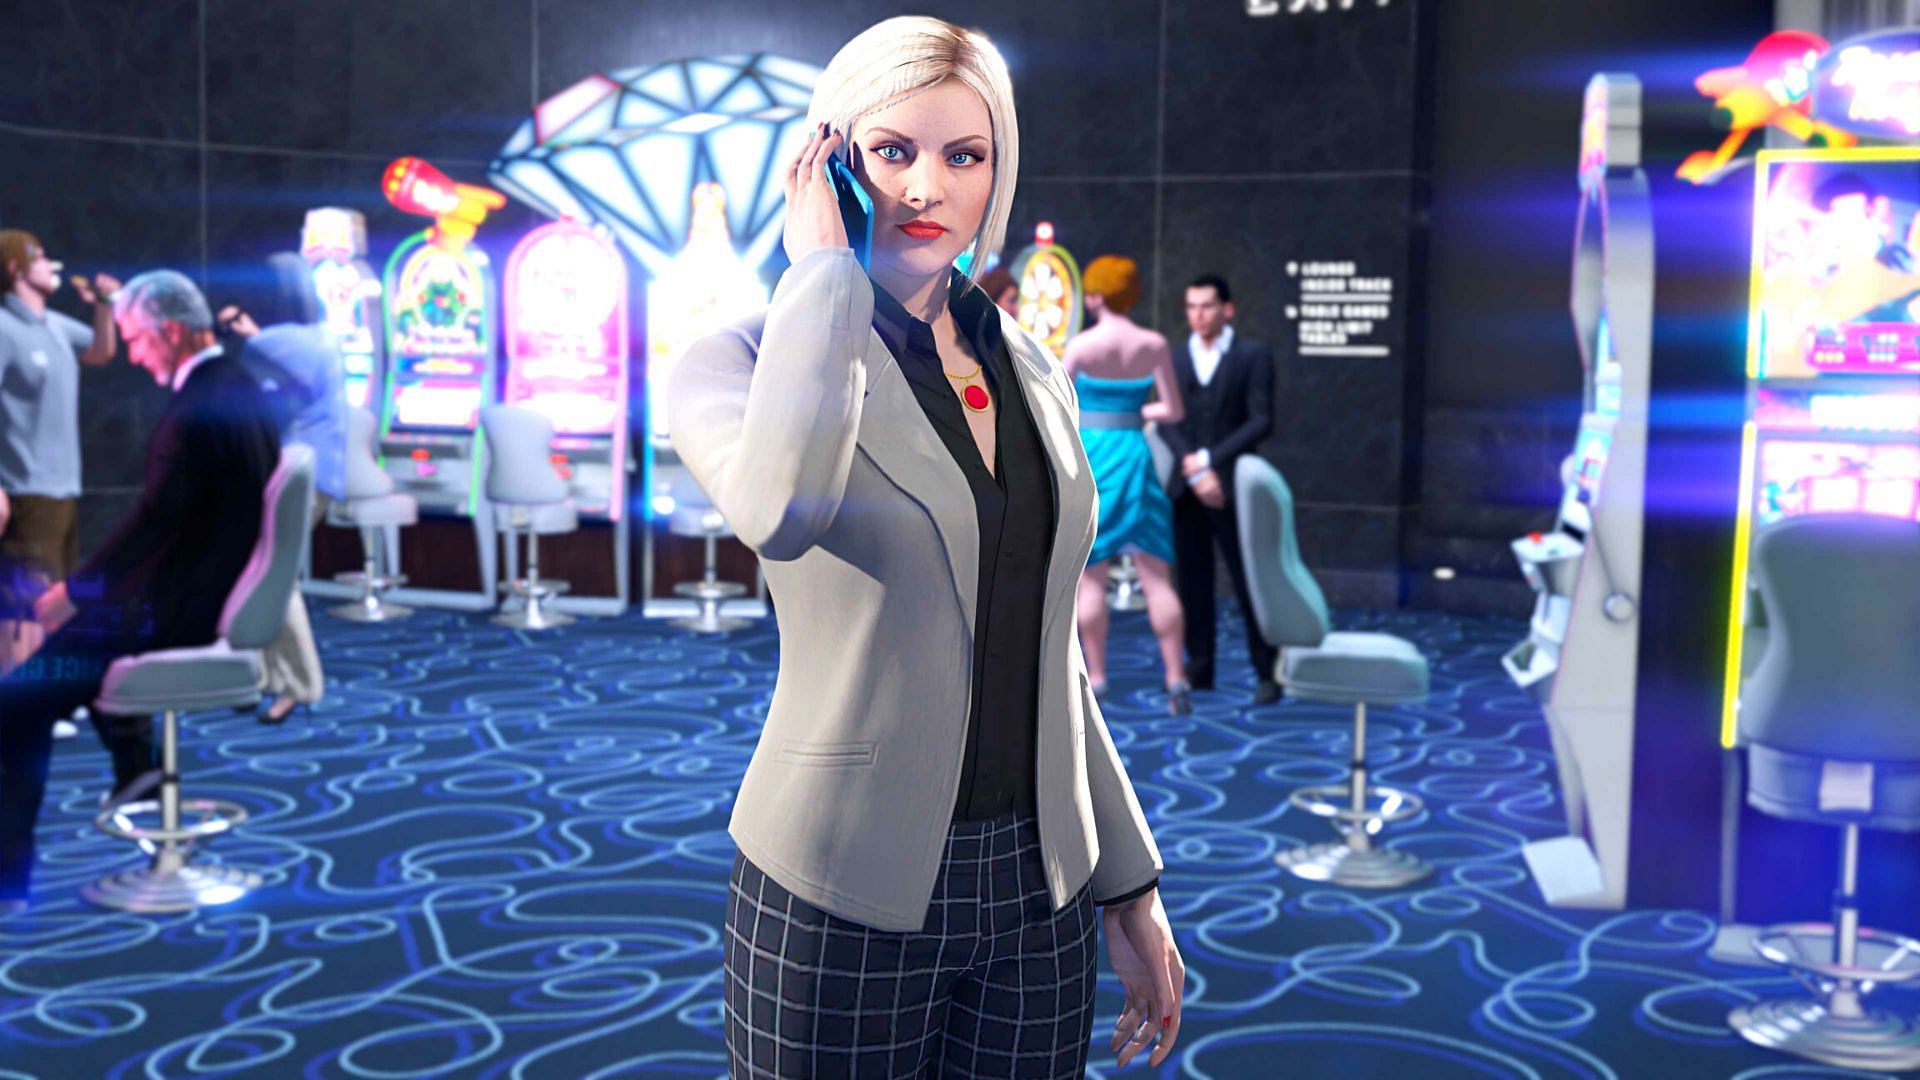 Casino Work is giving 3x bonuses in GTA Online until July 18 (Image via Rockstar Games)